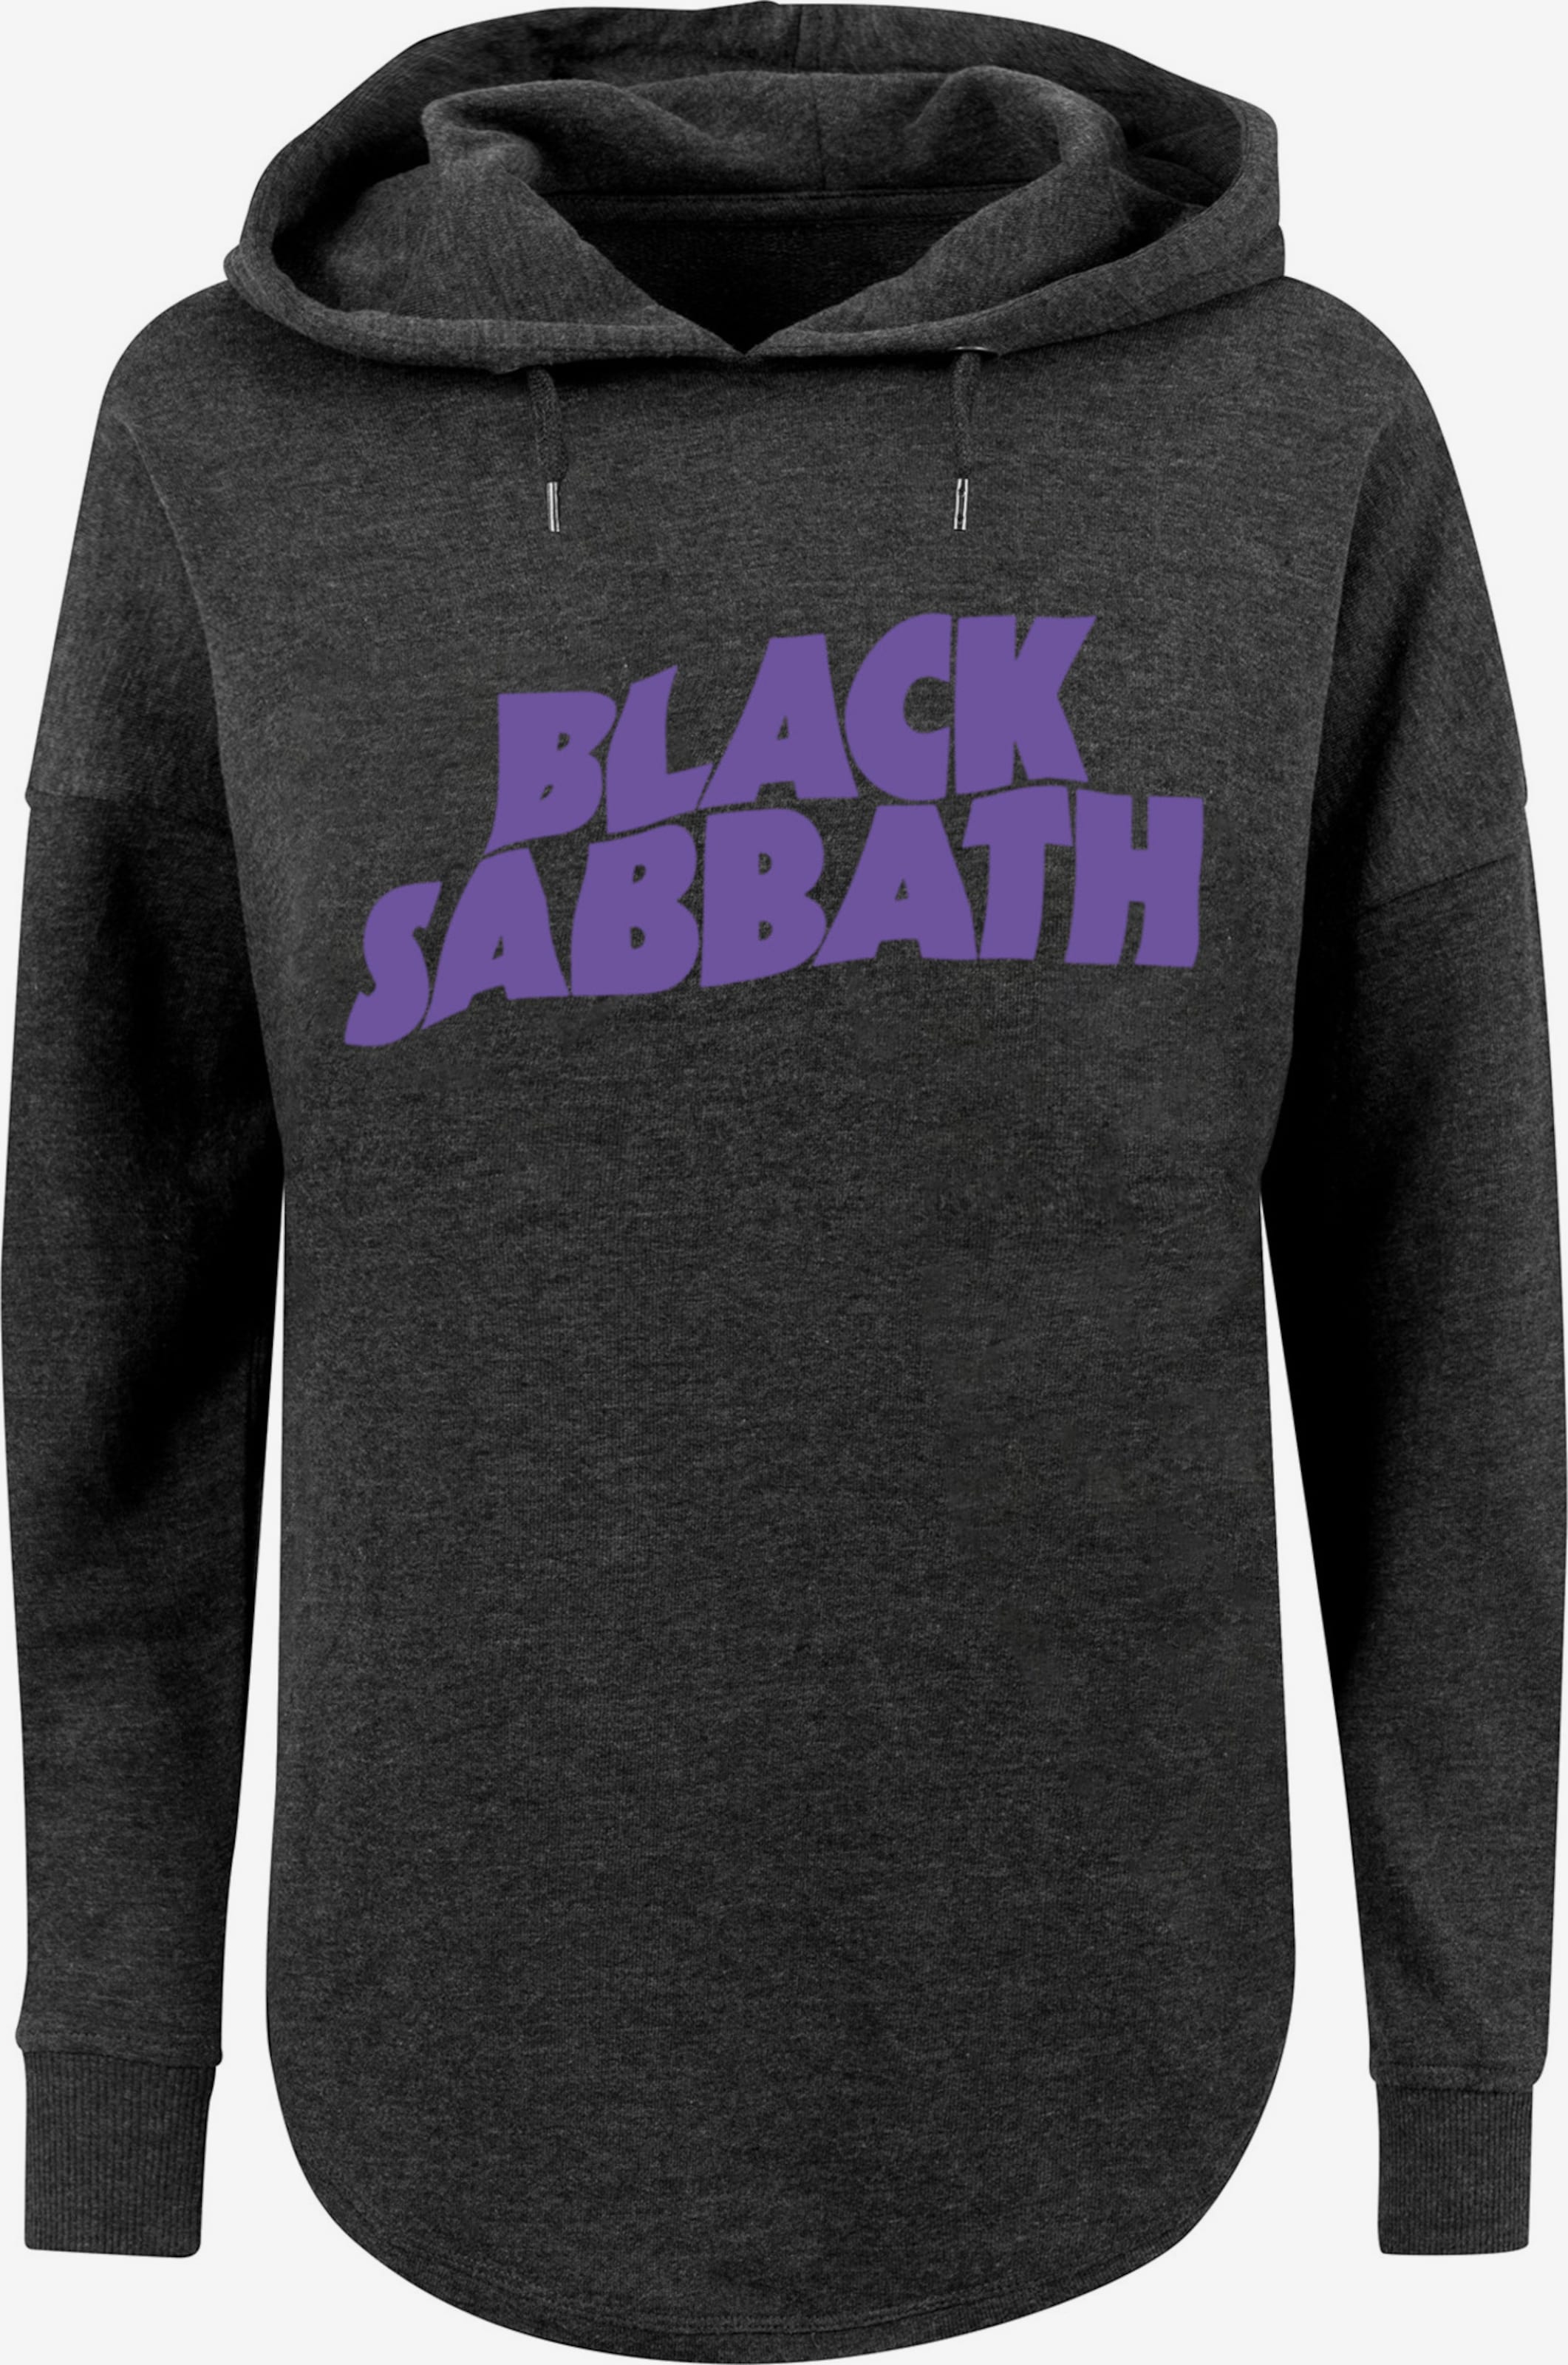 | Sweatshirt ABOUT Heavy Logo Sabbath Grey in Metal YOU \'Black Black\' Band Dark F4NT4STIC Wavy